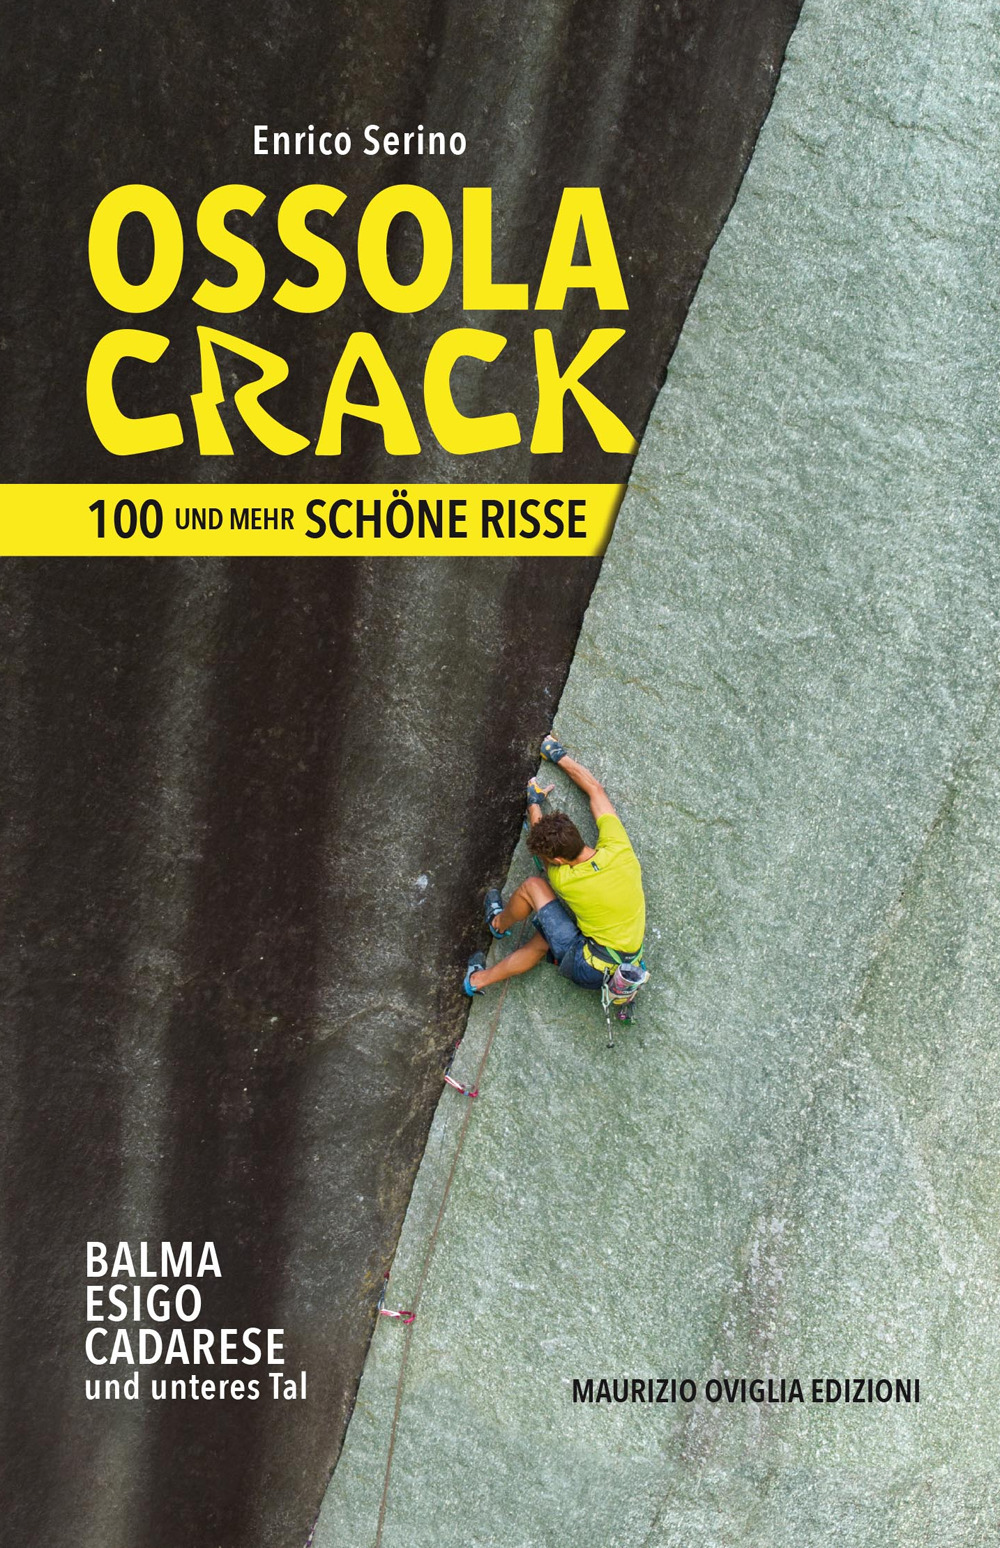 Libri Enrico Serino - Ossola Crack. 100 Und Mehr Schone Risse NUOVO SIGILLATO, EDIZIONE DEL 30/01/2022 SUBITO DISPONIBILE